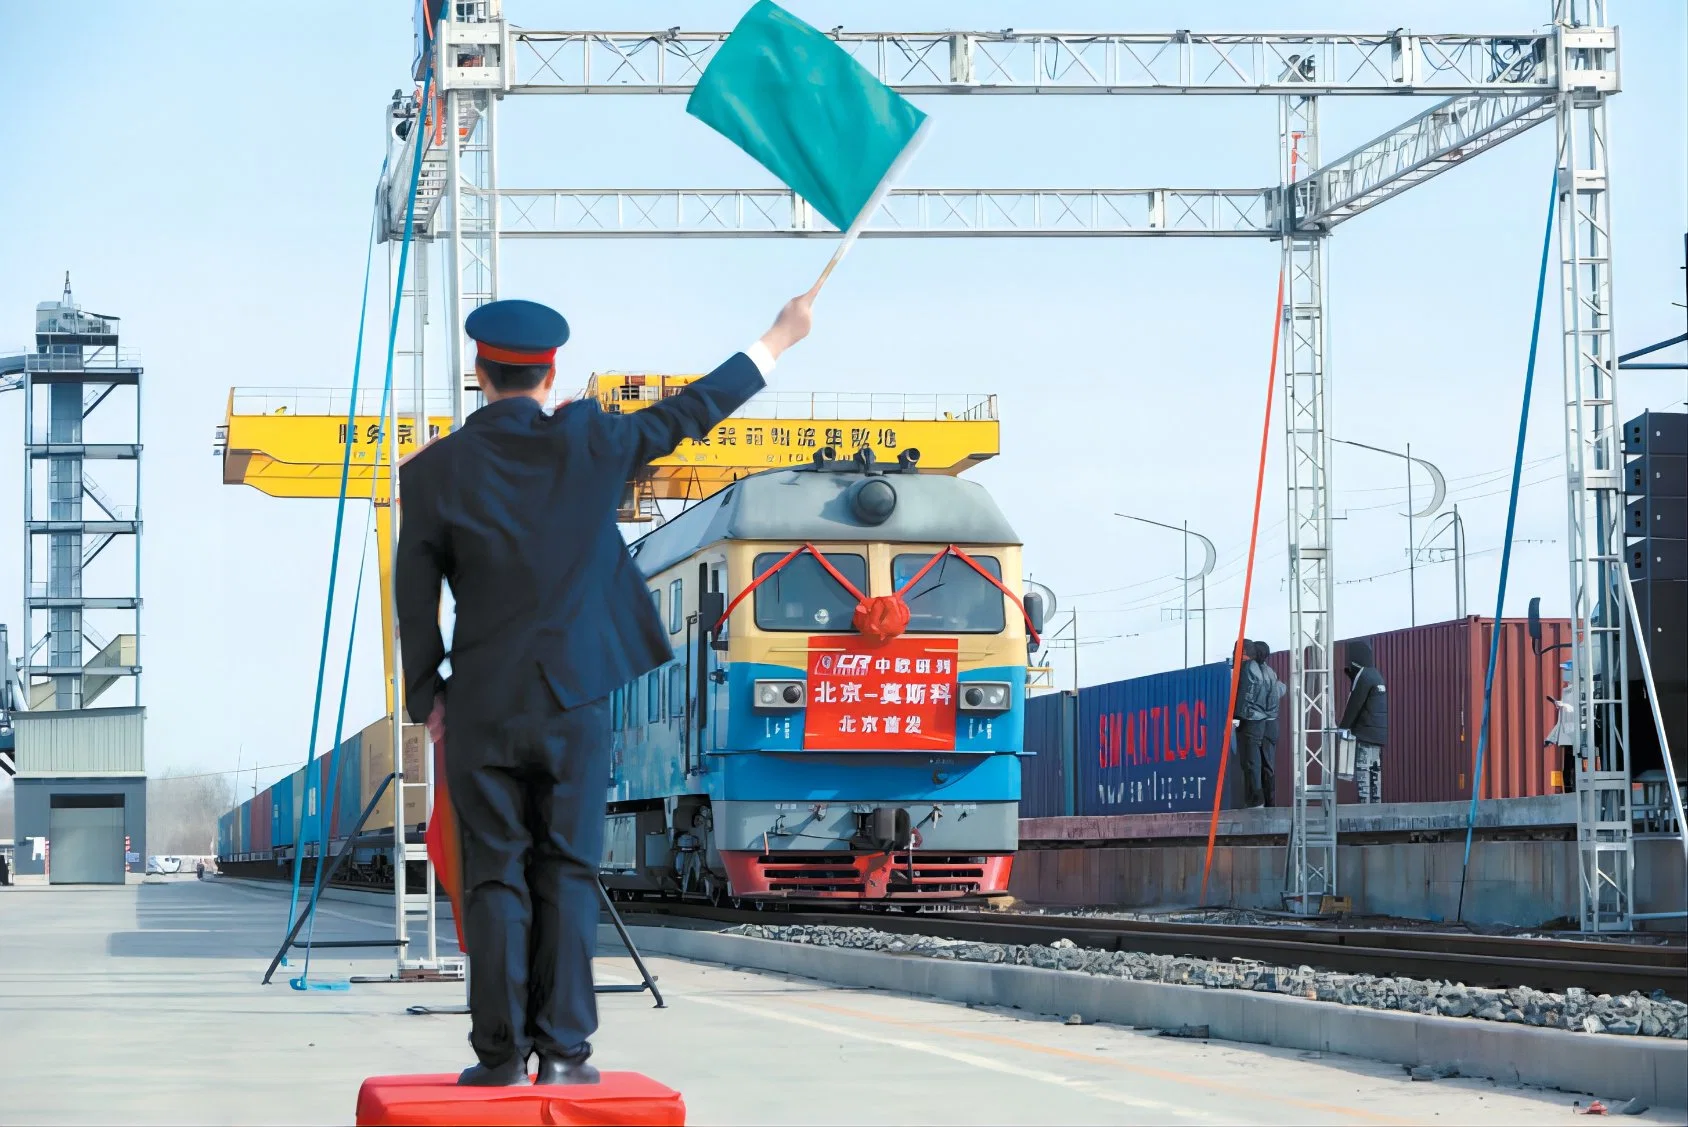 الصين إلى أسبانيا للسكك الحديدية النقل البحري النقل البحري النقل السريع خدمات وكيل خدمة النقل والإمداد بالتسليم